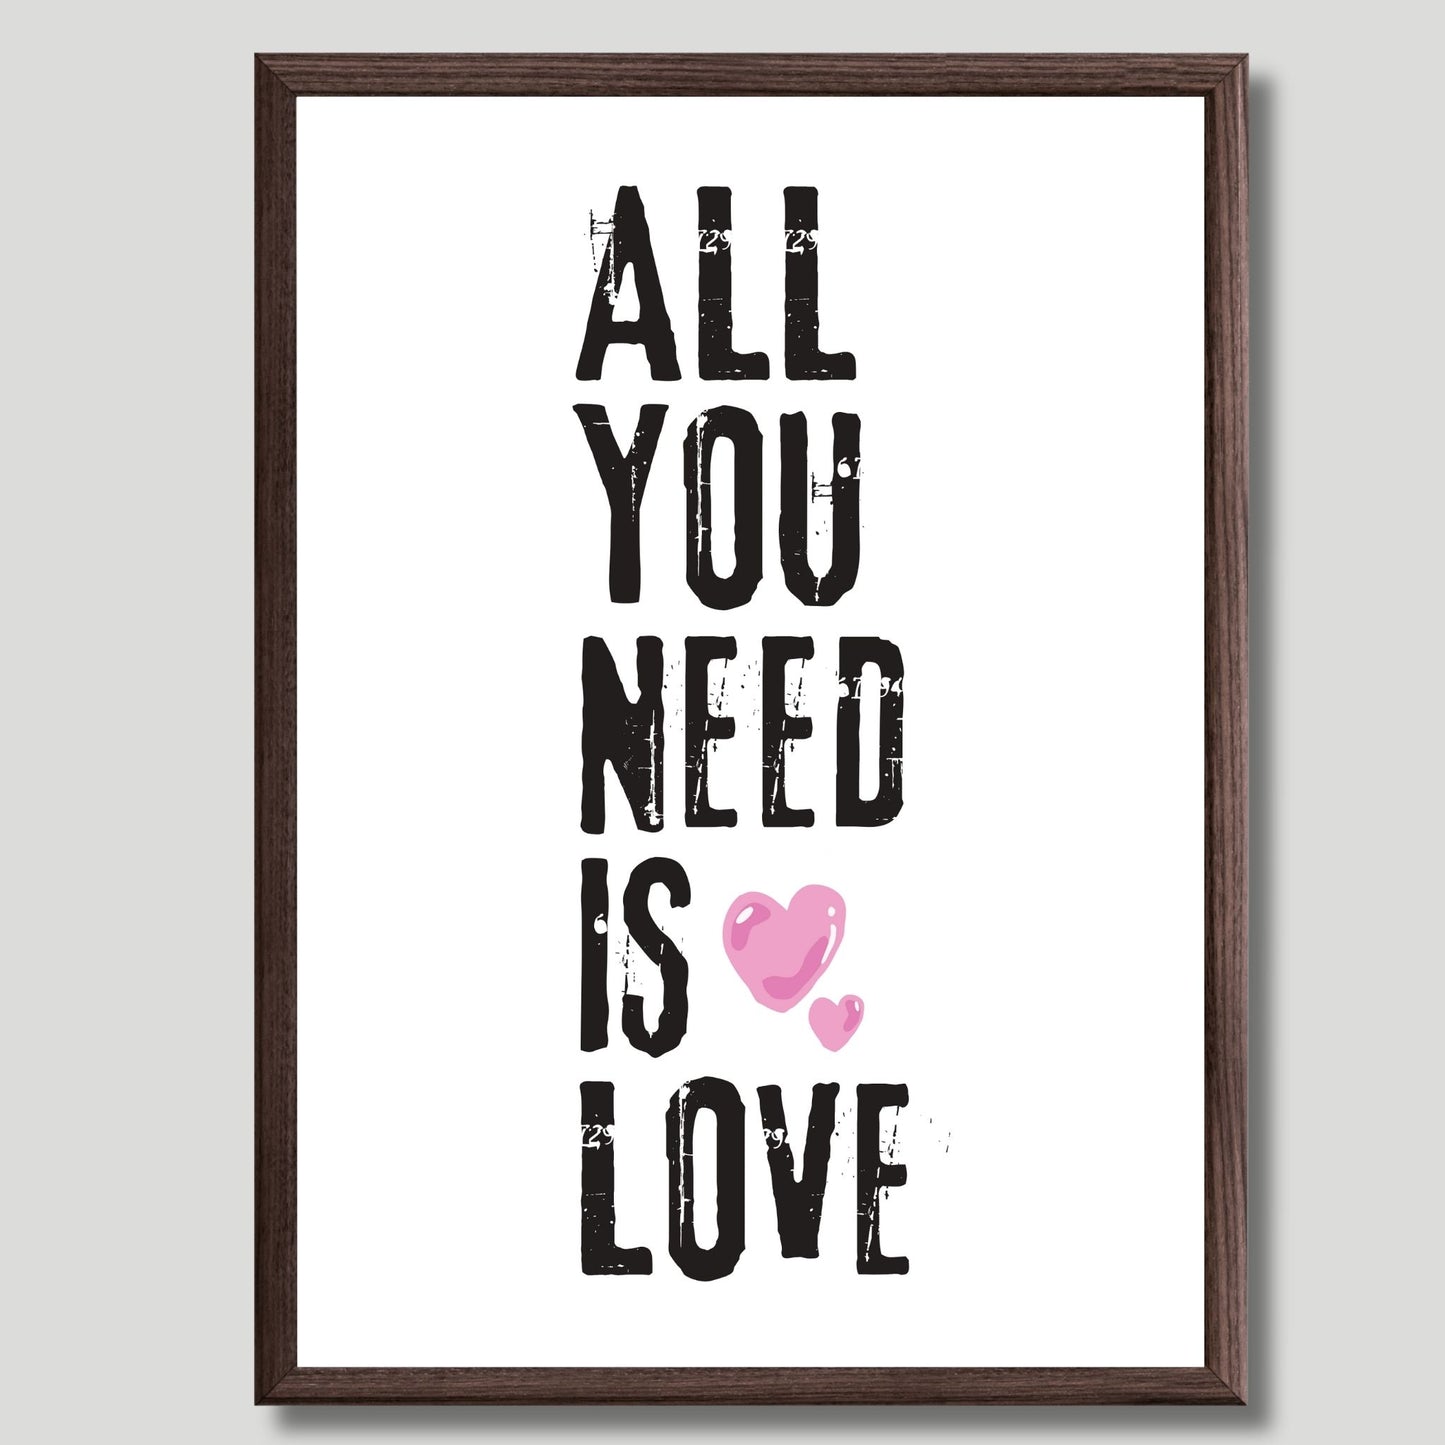 ALL YOU NEED IS LOVE - grafisk tekstplakat med sort tekst på hvit bakgrunn, og to rosa hjerter. 